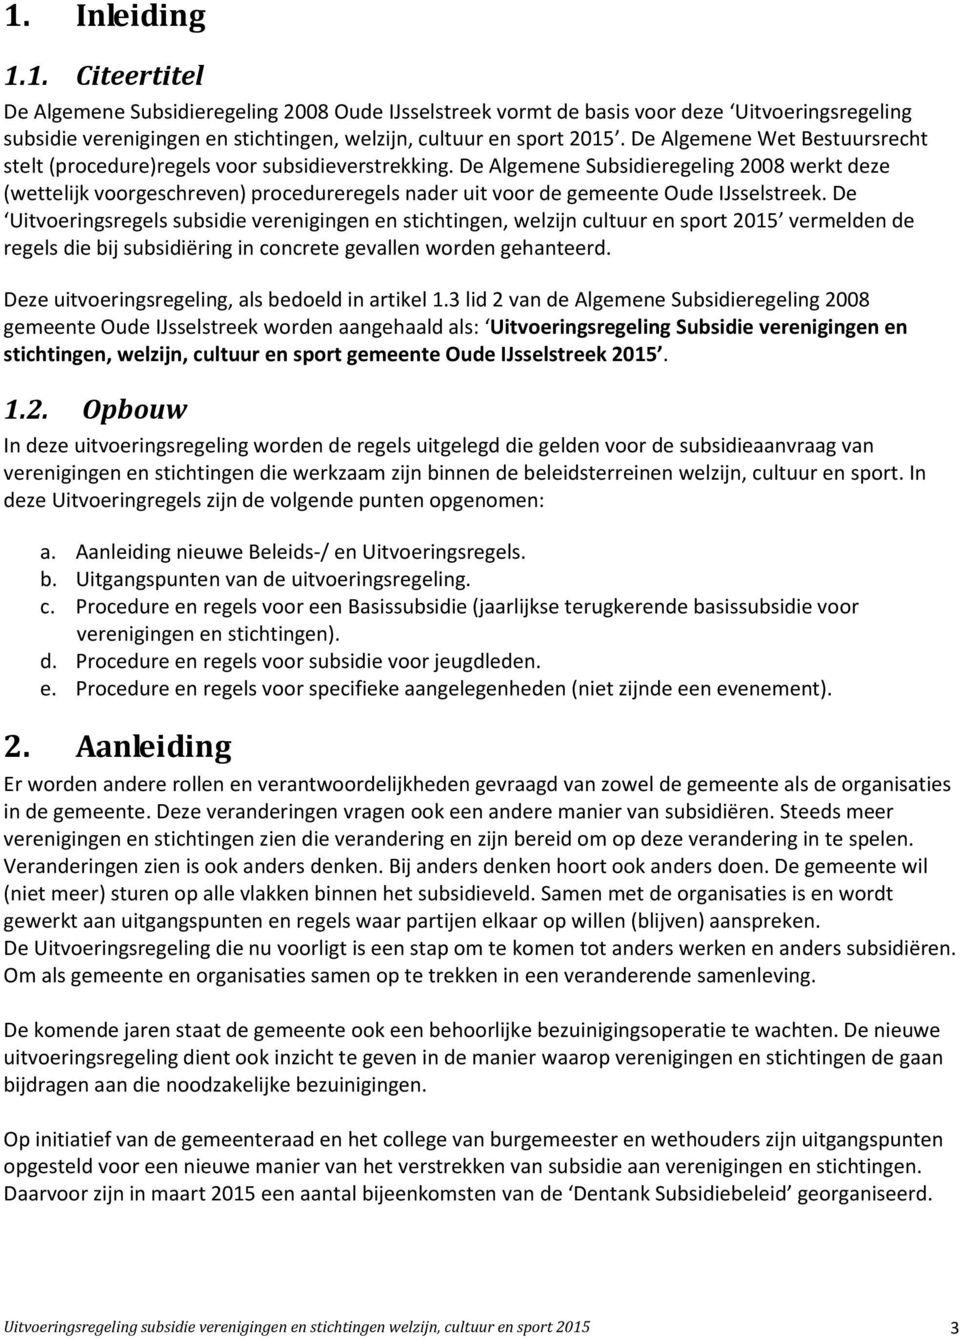 De Algemene Subsidieregeling 2008 werkt deze (wettelijk voorgeschreven) procedureregels nader uit voor de gemeente Oude IJsselstreek.